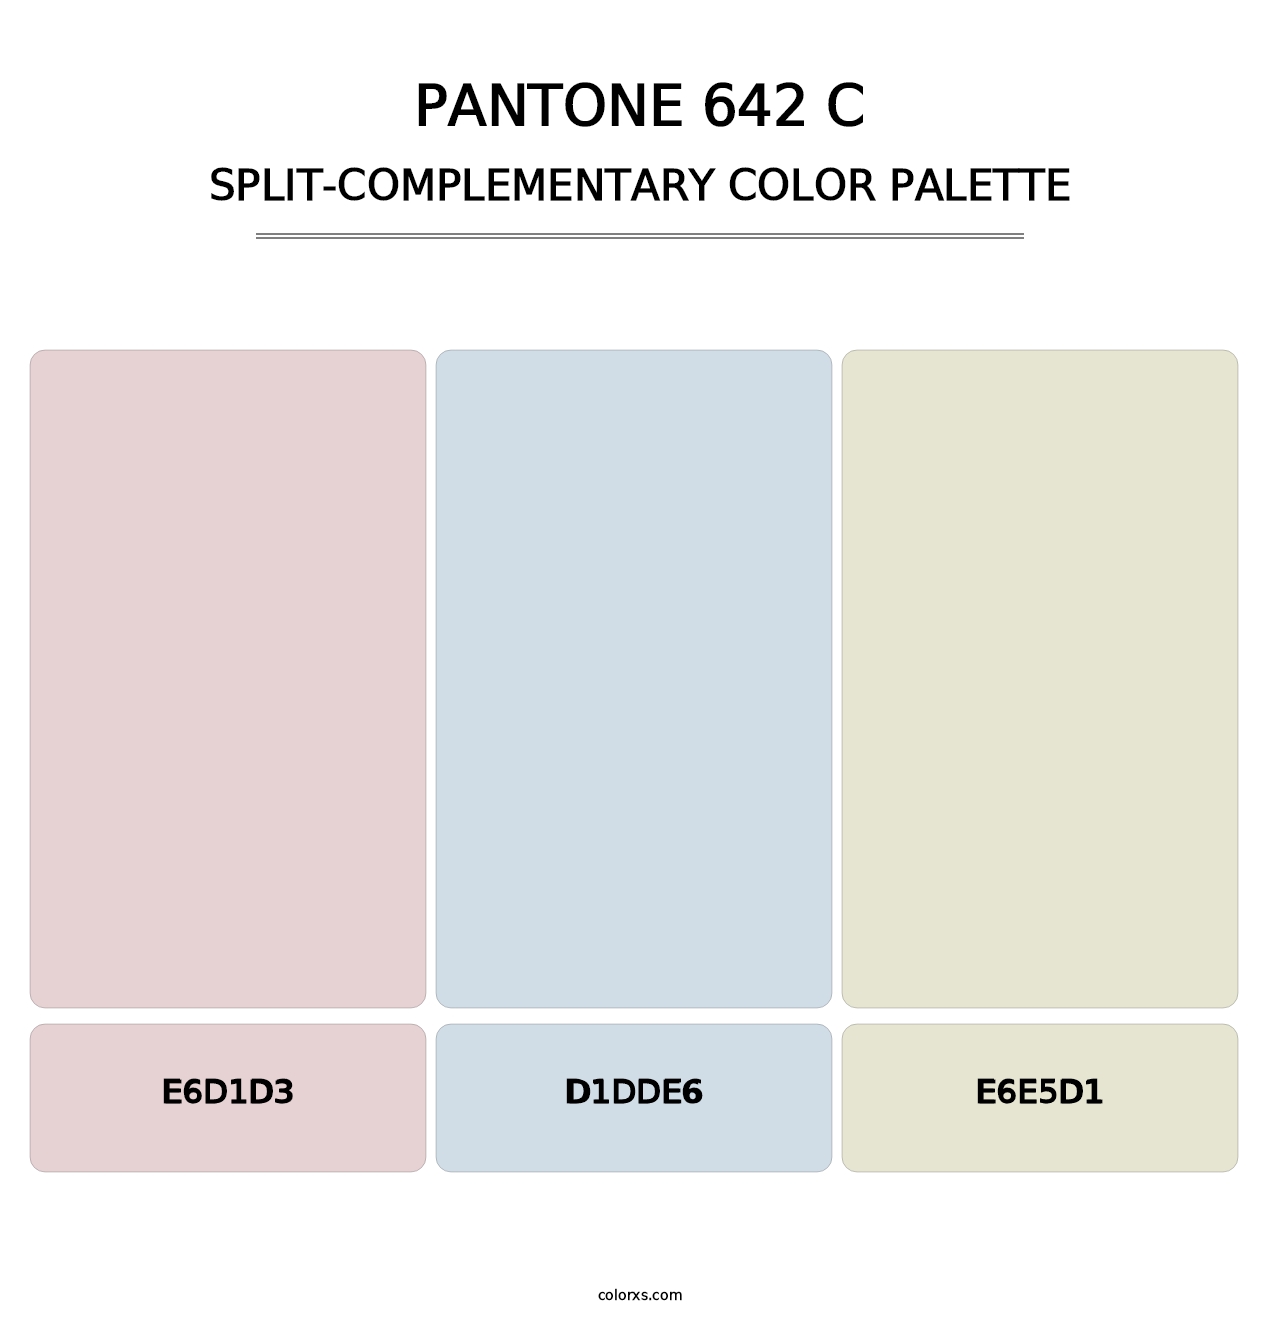 PANTONE 642 C - Split-Complementary Color Palette